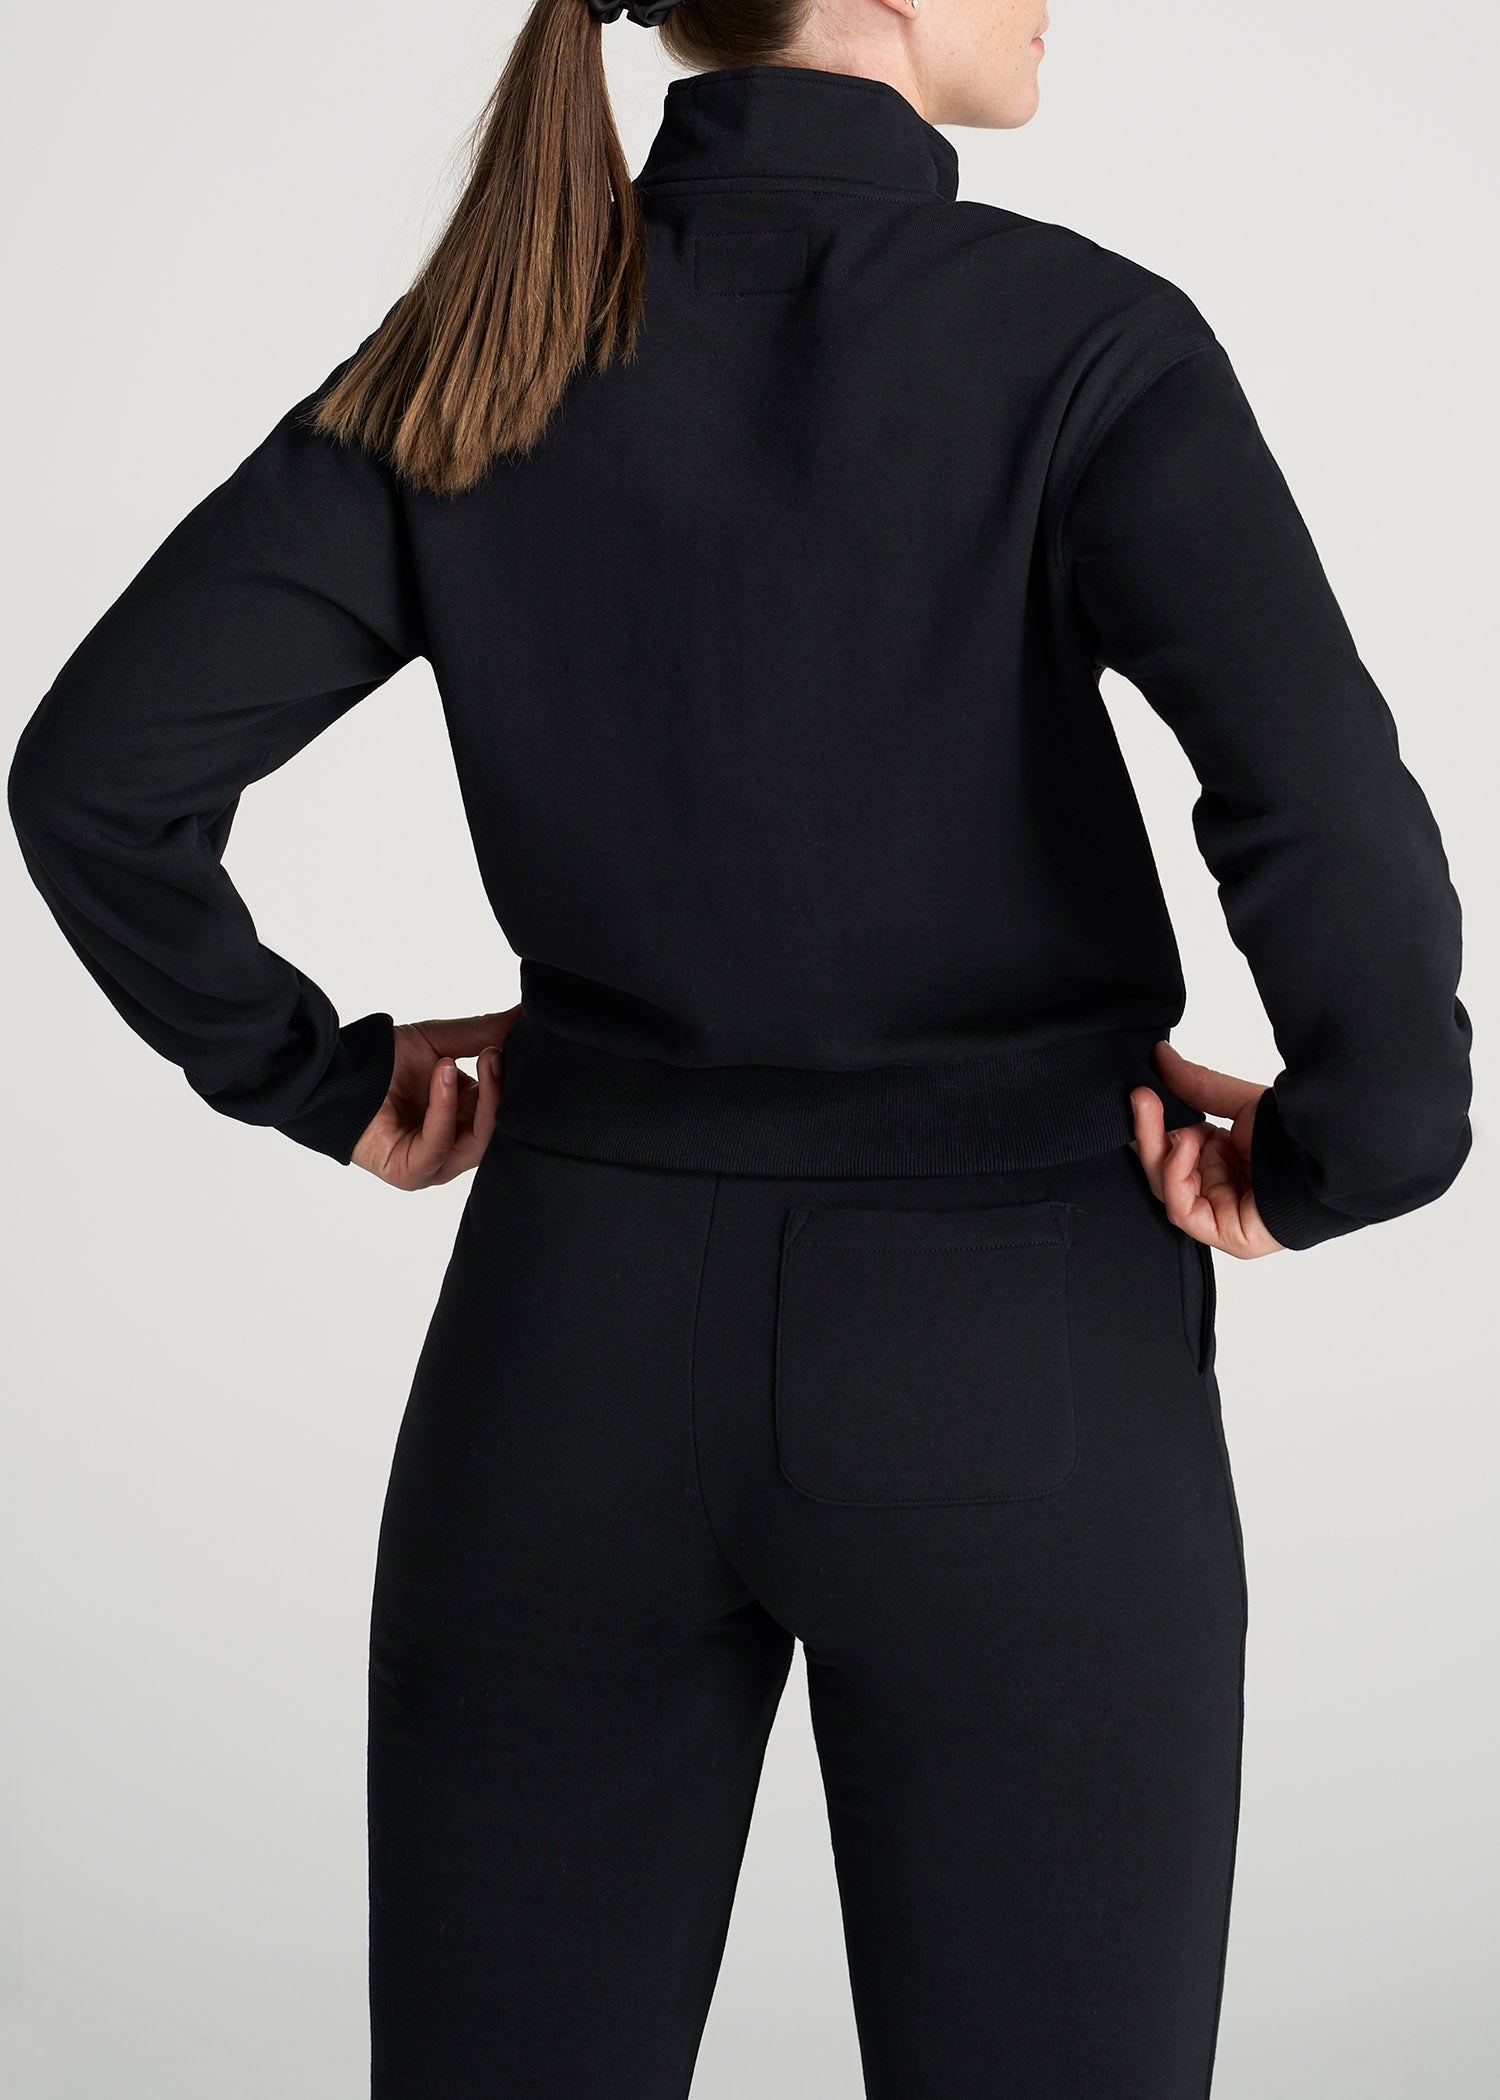 Wearever Fleece Full-Zip Women's Tall Hoodie in Black L / Tall / Black